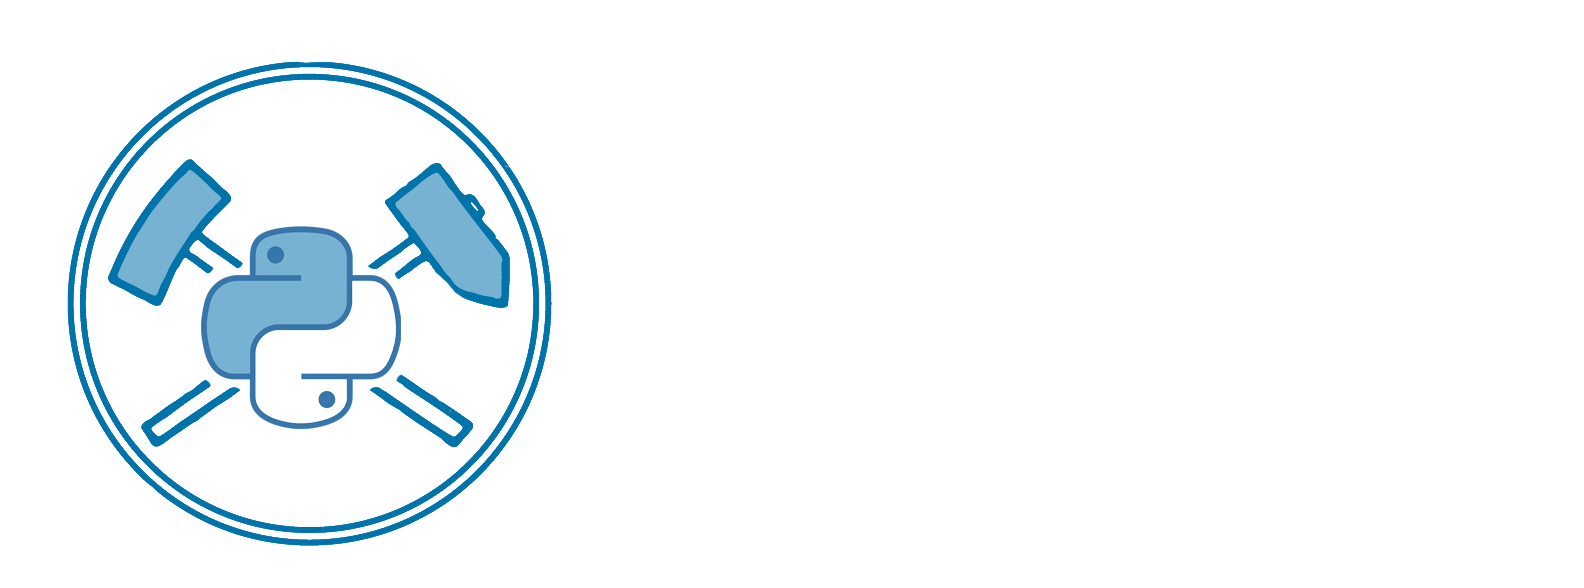 pyiron-logo.png